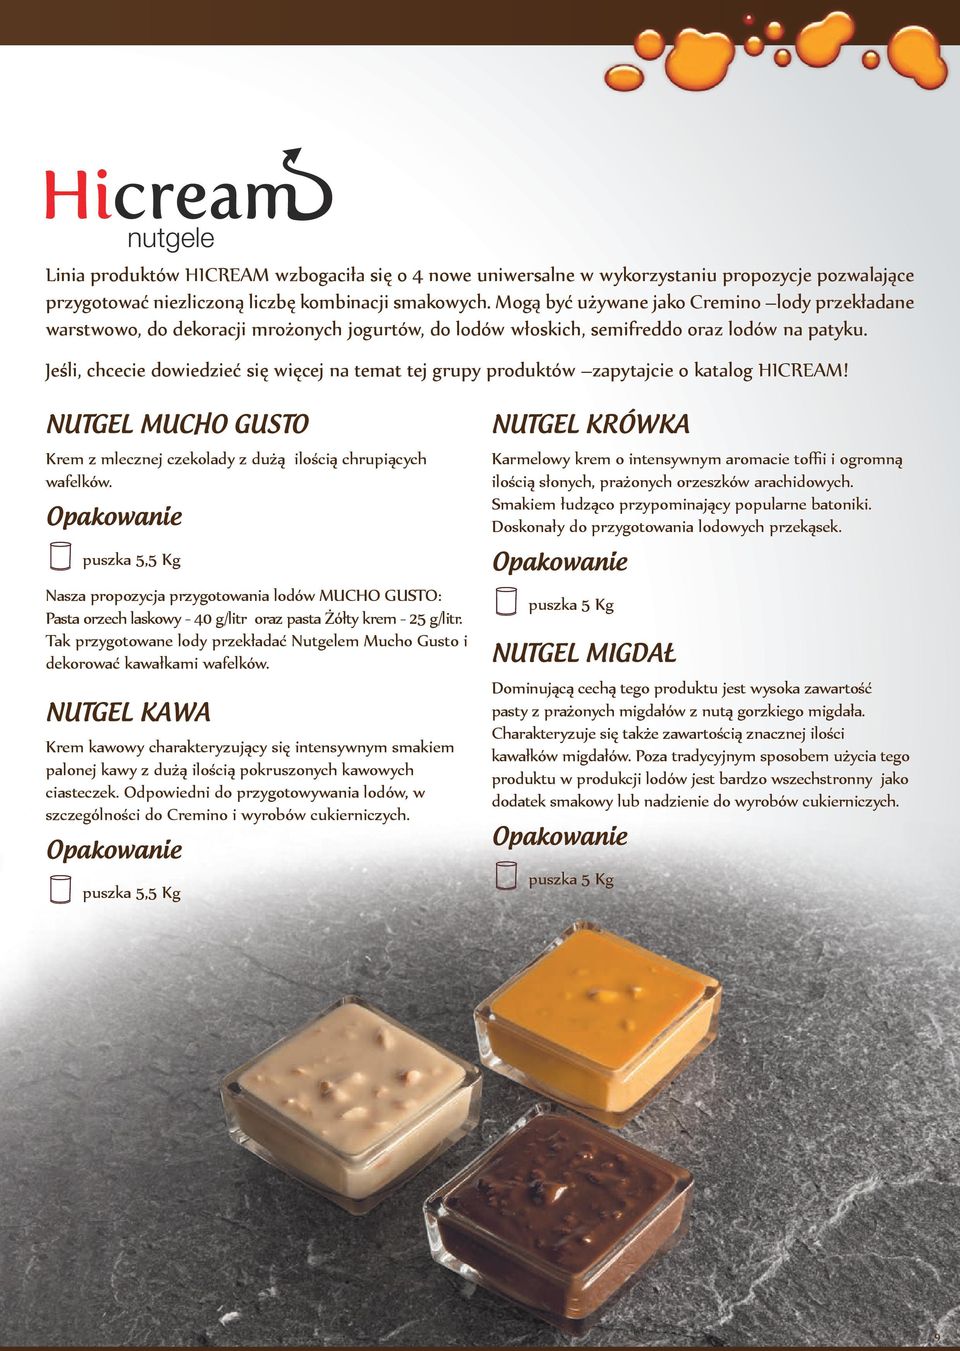 Jeśli, chcecie dowiedzieć się więcej na temat tej grupy produktów zapytajcie o katalog HICREAM! NUTGEL MUCHO GUSTO Krem z mlecznej czekolady z dużą ilością chrupiących wafelków.